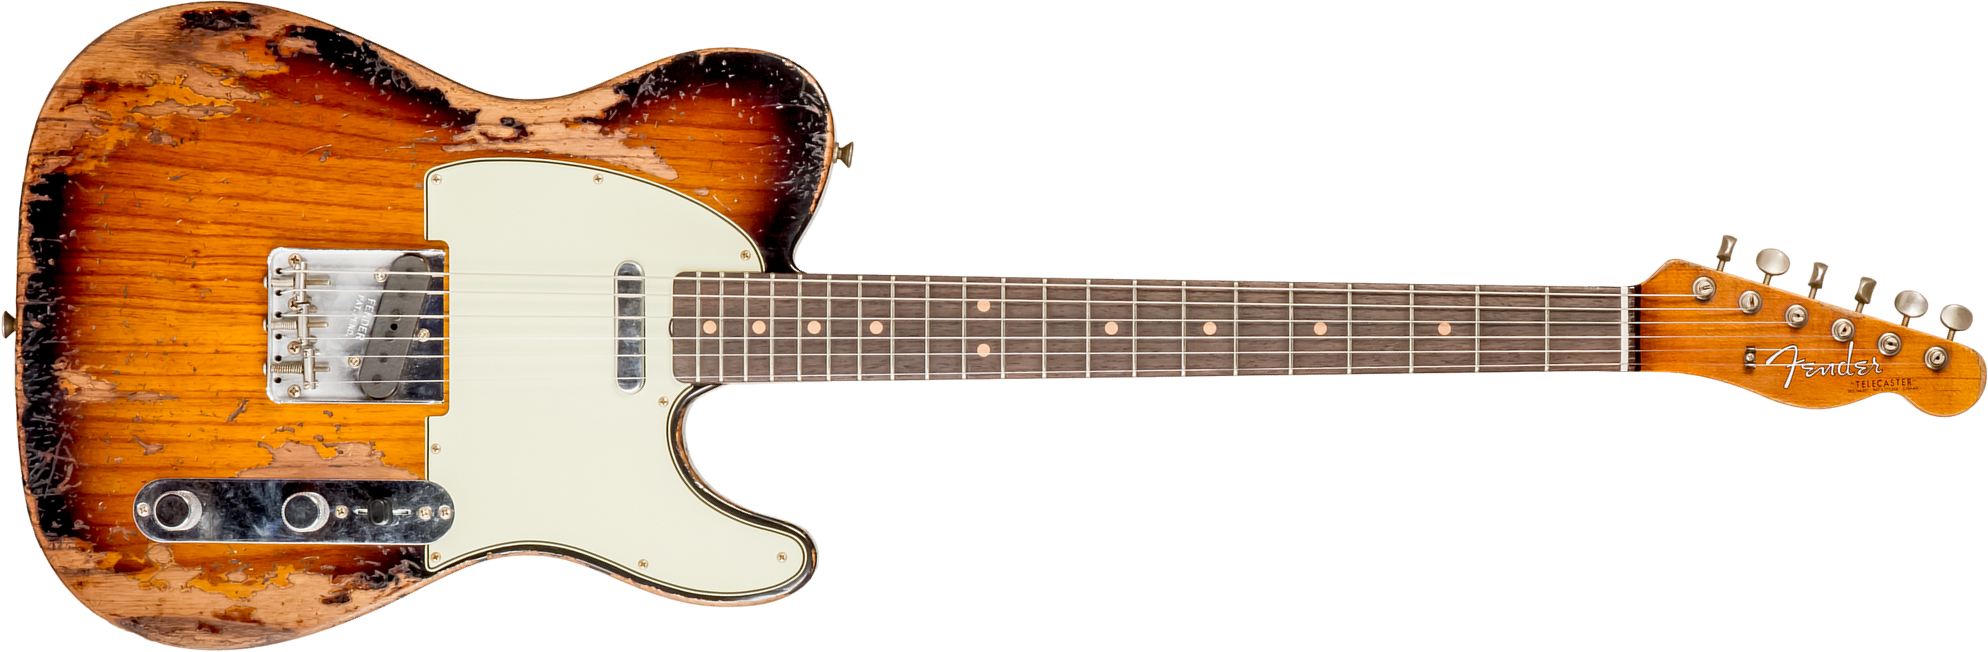 Fender Custom Shop Tele 1963 2s Ht Rw #r136206 - Super Heavy Relic 2-color Sunburst - Tel shape electric guitar - Main picture